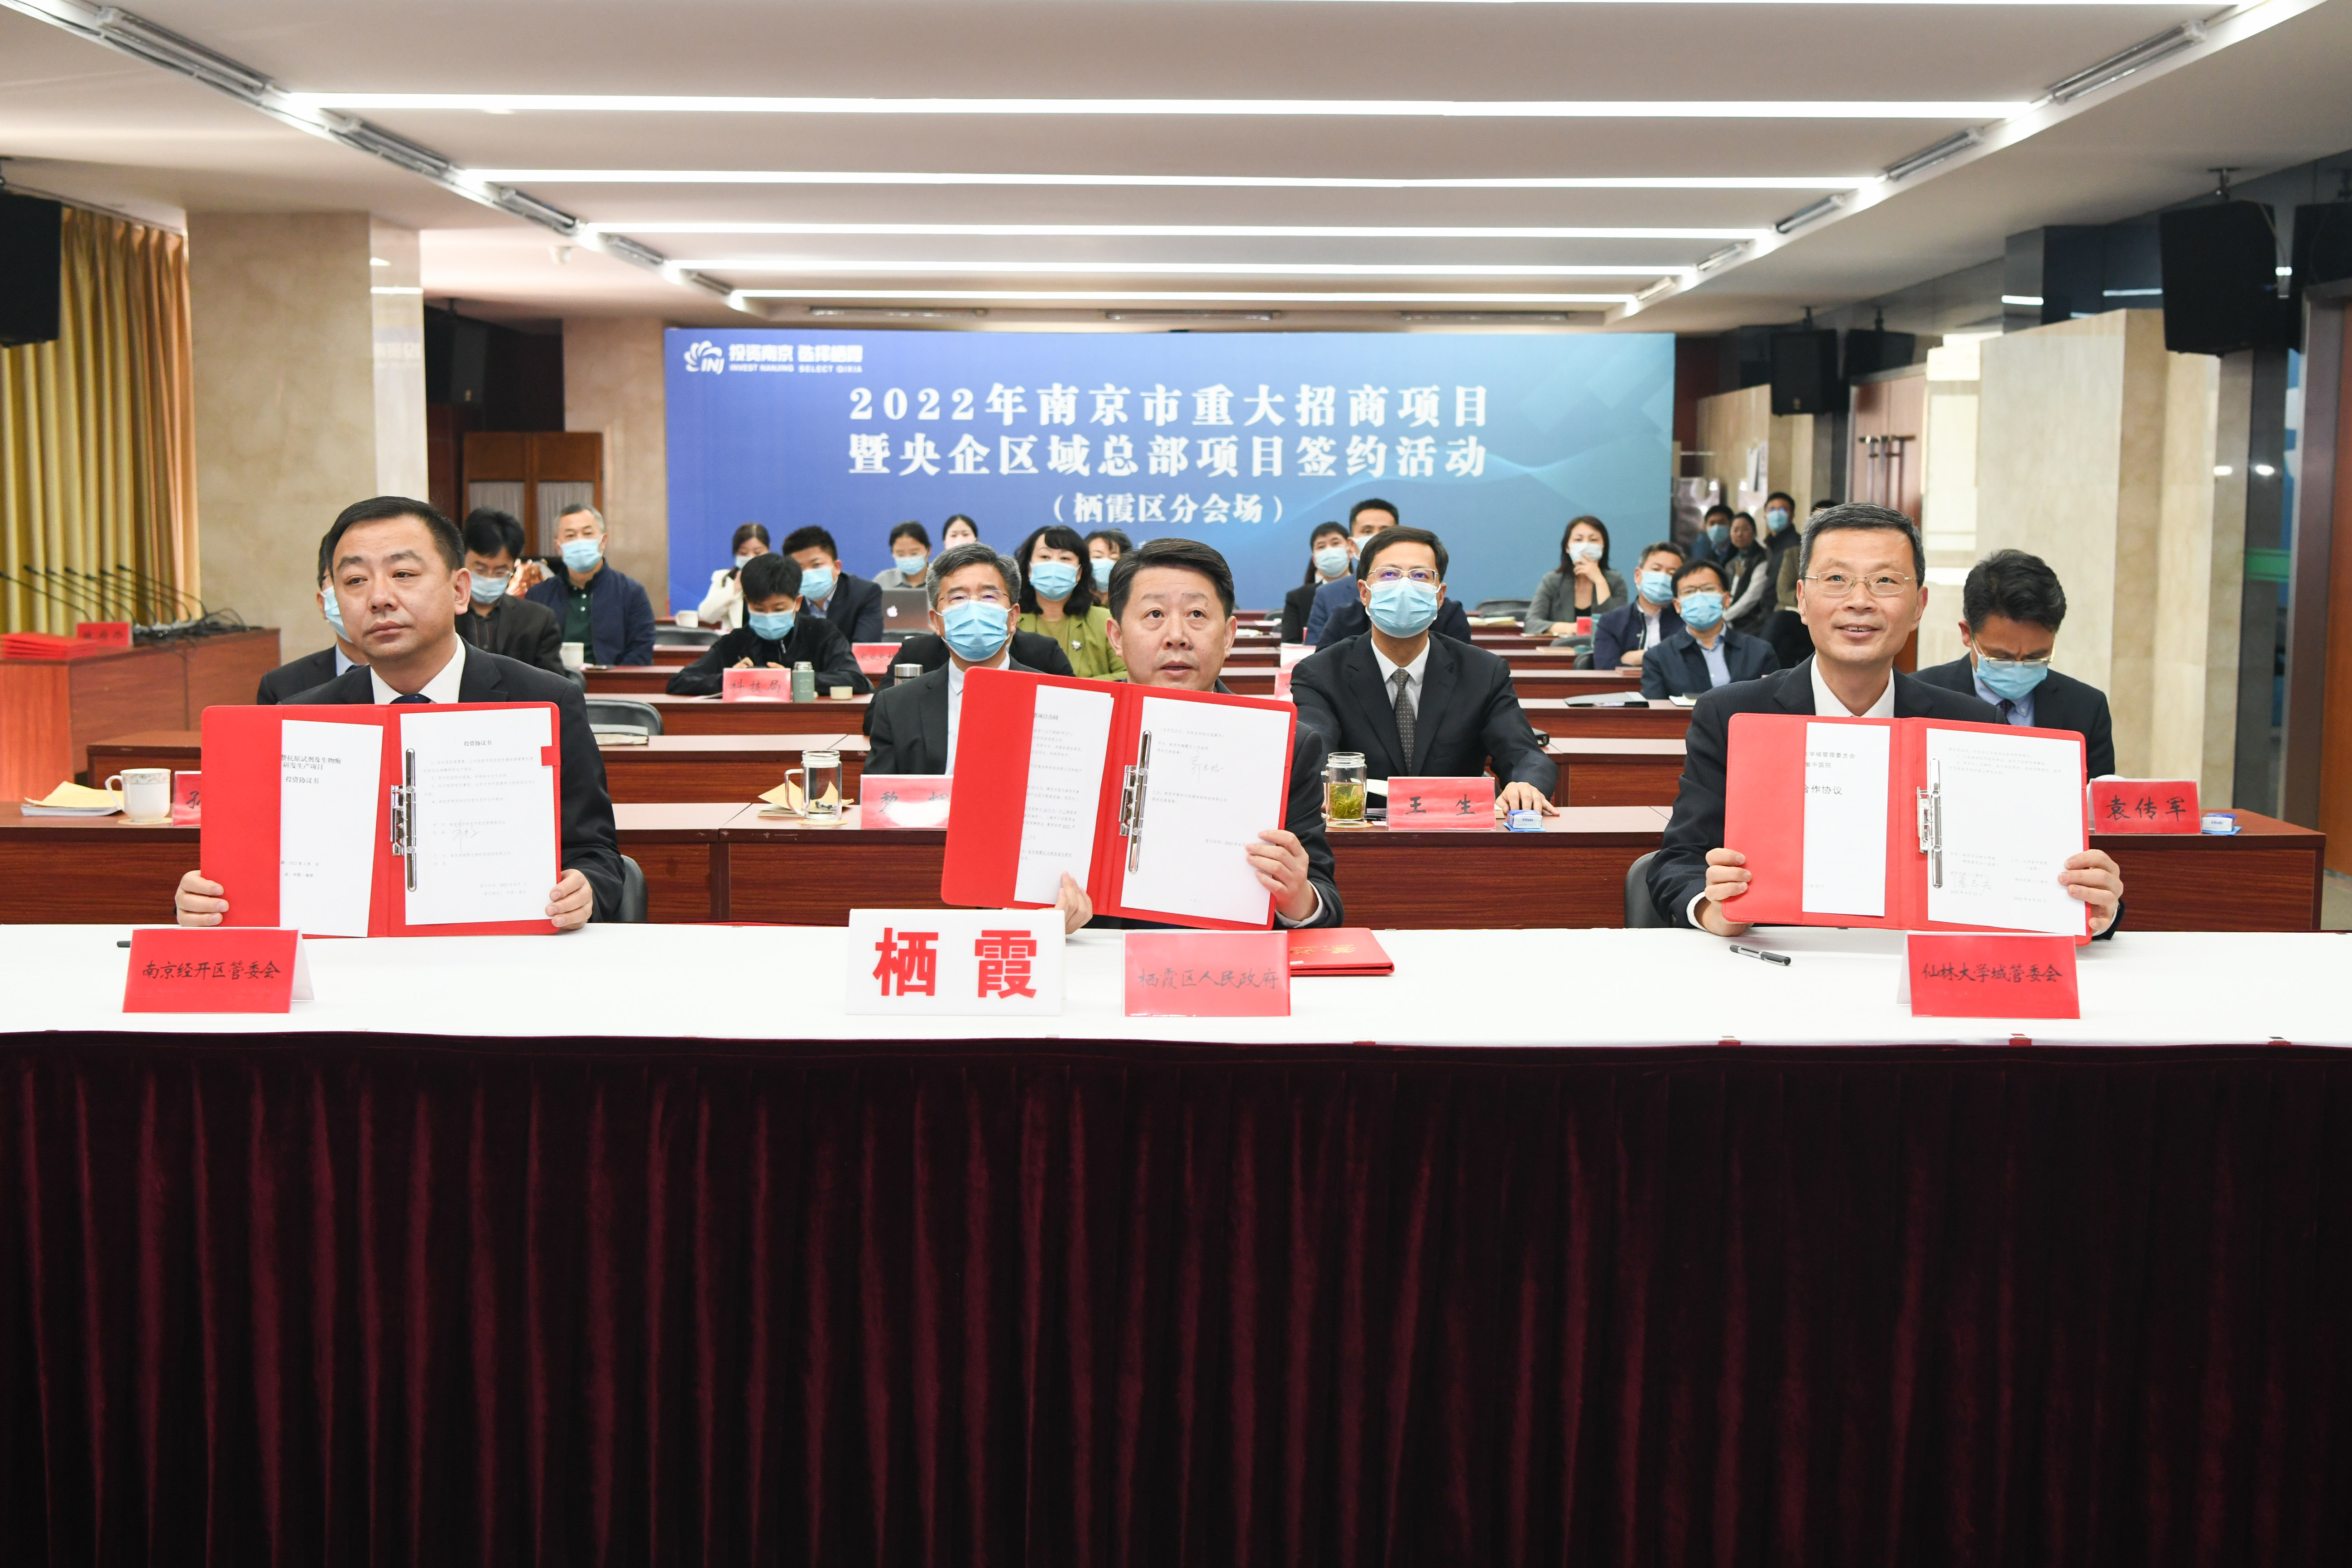 南京市重大招商项目暨央企区域总部项目签约活动栖霞分会场现场。栖宣供图